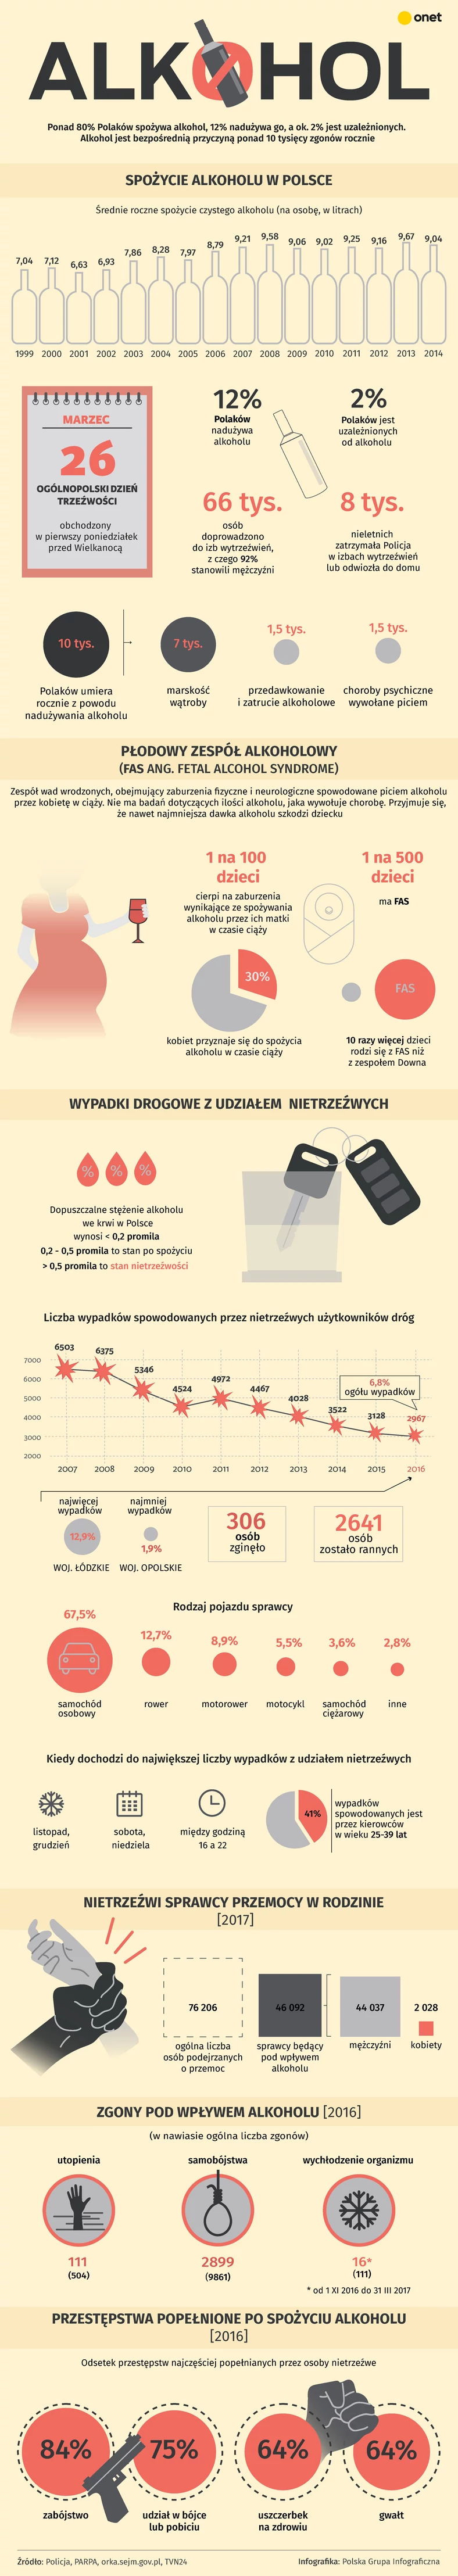 Spożycie alkoholu w Polsce (infografika)